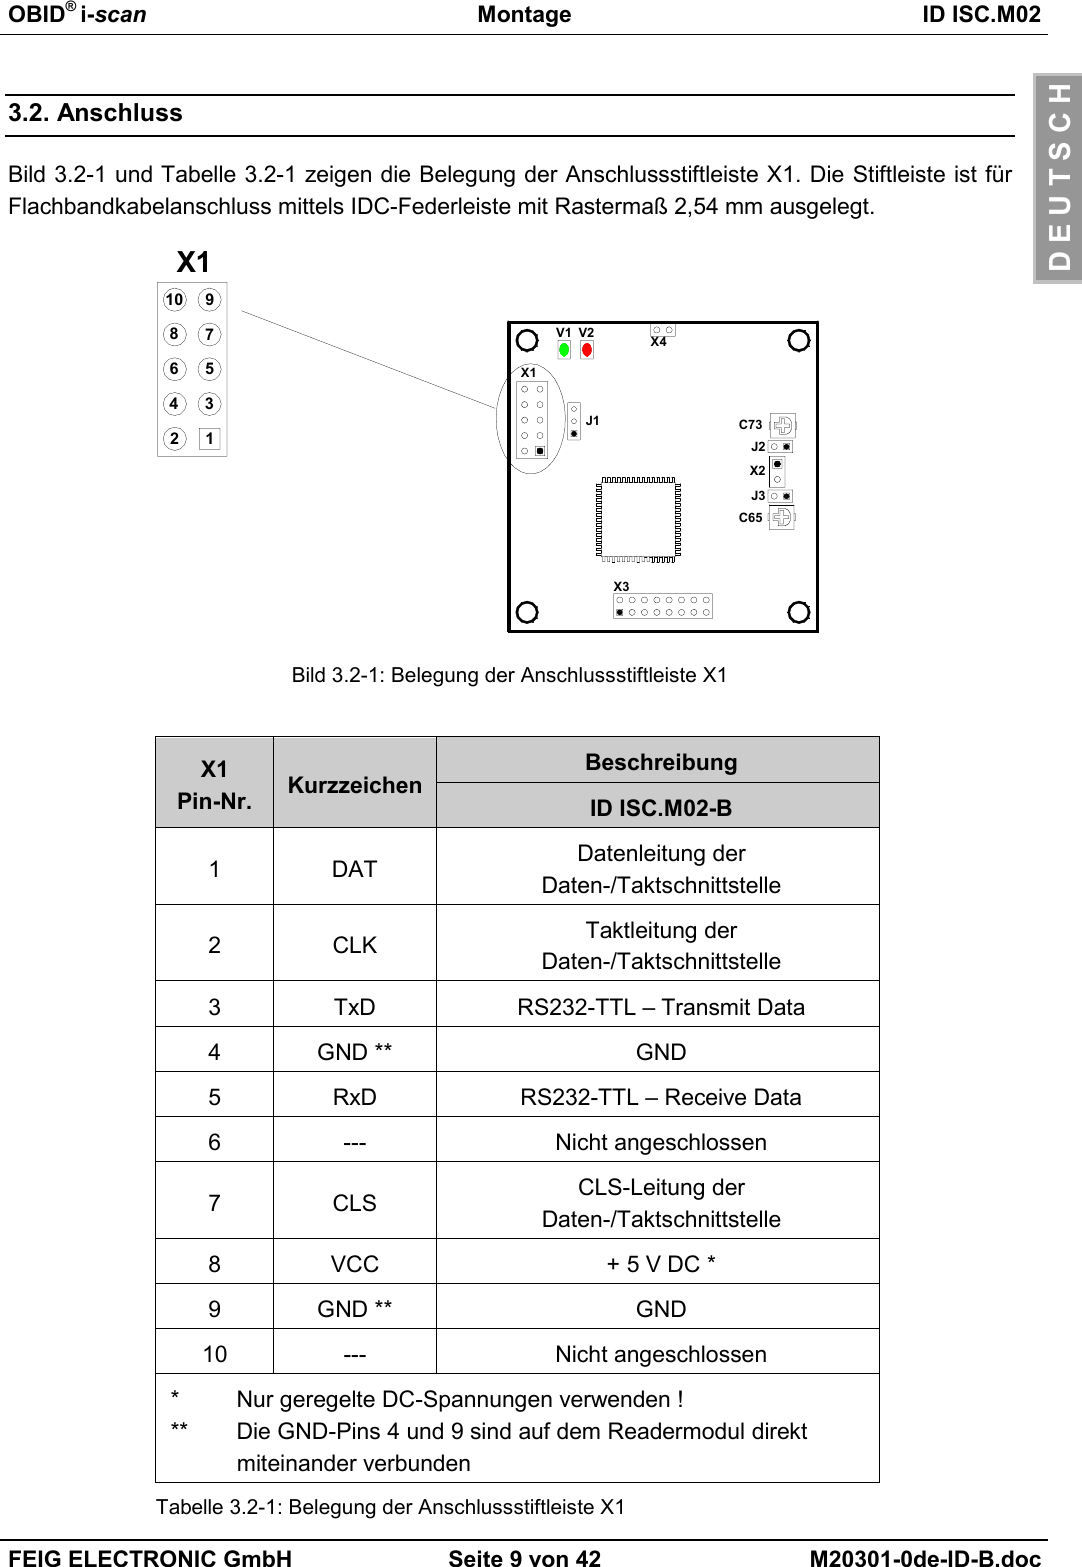 OBID® i-scan Montage ID ISC.M02FEIG ELECTRONIC GmbH Seite 9 von 42 M20301-0de-ID-B.docD E U T S C H3.2. AnschlussBild 3.2-1 und Tabelle 3.2-1 zeigen die Belegung der Anschlussstiftleiste X1. Die Stiftleiste ist fürFlachbandkabelanschluss mittels IDC-Federleiste mit Rastermaß 2,54 mm ausgelegt.Bild 3.2-1: Belegung der Anschlussstiftleiste X1BeschreibungX1Pin-Nr. Kurzzeichen ID ISC.M02-B1DAT Datenleitung derDaten-/Taktschnittstelle2CLK Taktleitung derDaten-/Taktschnittstelle3 TxD RS232-TTL – Transmit Data4 GND ** GND5 RxD RS232-TTL – Receive Data6 --- Nicht angeschlossen7CLS CLS-Leitung derDaten-/Taktschnittstelle8 VCC + 5 V DC *9 GND ** GND10 --- Nicht angeschlossen*  Nur geregelte DC-Spannungen verwenden !**  Die GND-Pins 4 und 9 sind auf dem Readermodul direkt miteinander verbundenTabelle 3.2-1: Belegung der Anschlussstiftleiste X1X1J1V2V1C65X112435796810J2J3X2X3X4C73